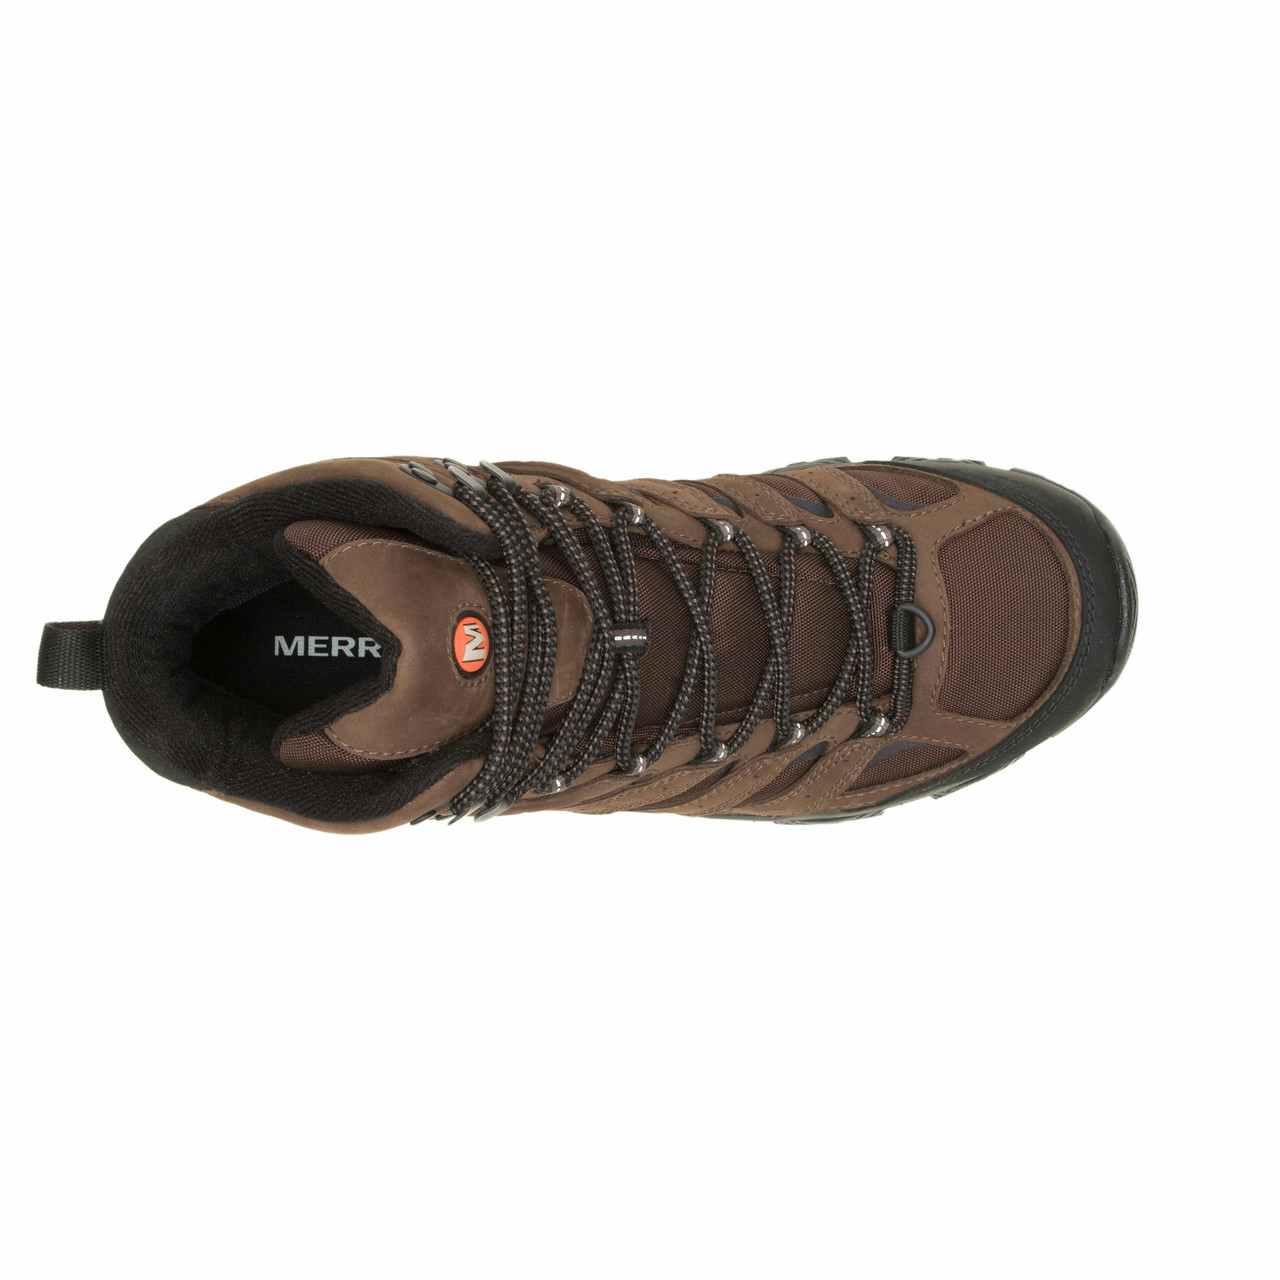 Moab 3 Apex Mid Waterproof Light Trail Shoes Bracken